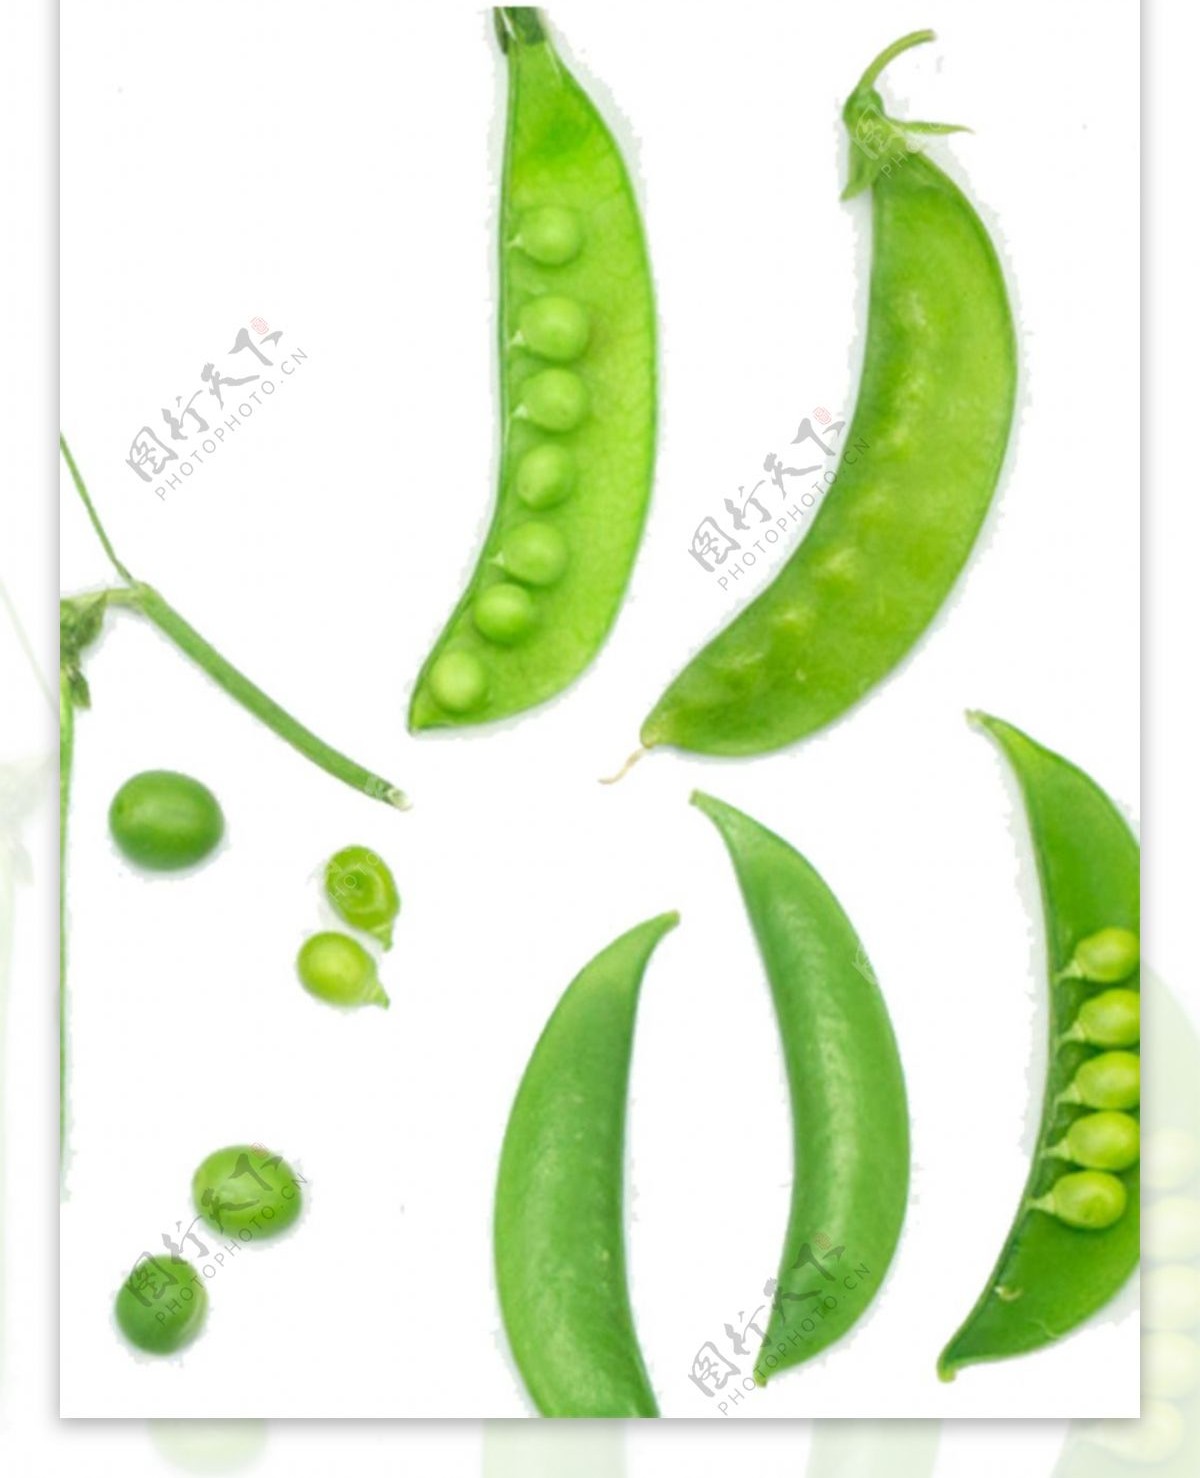 绿色豆荚蔬菜图案